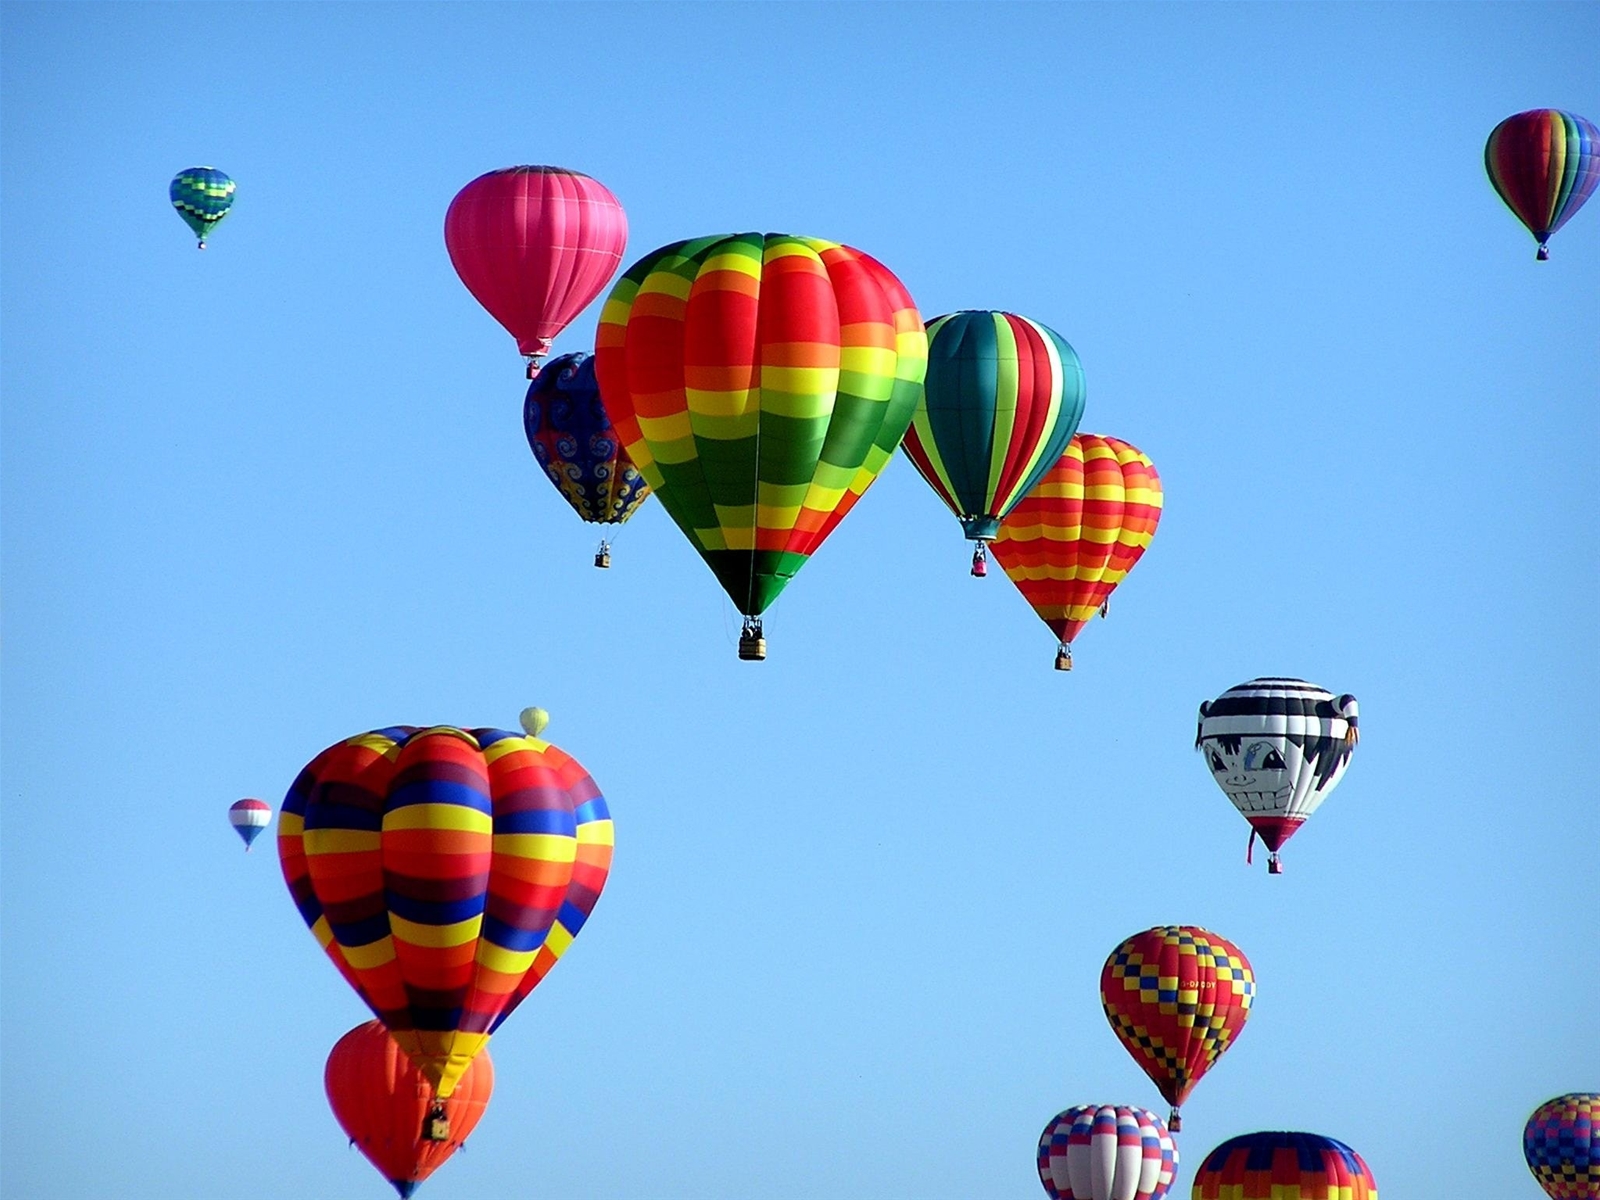 Deer Valley Hot Air Balloons